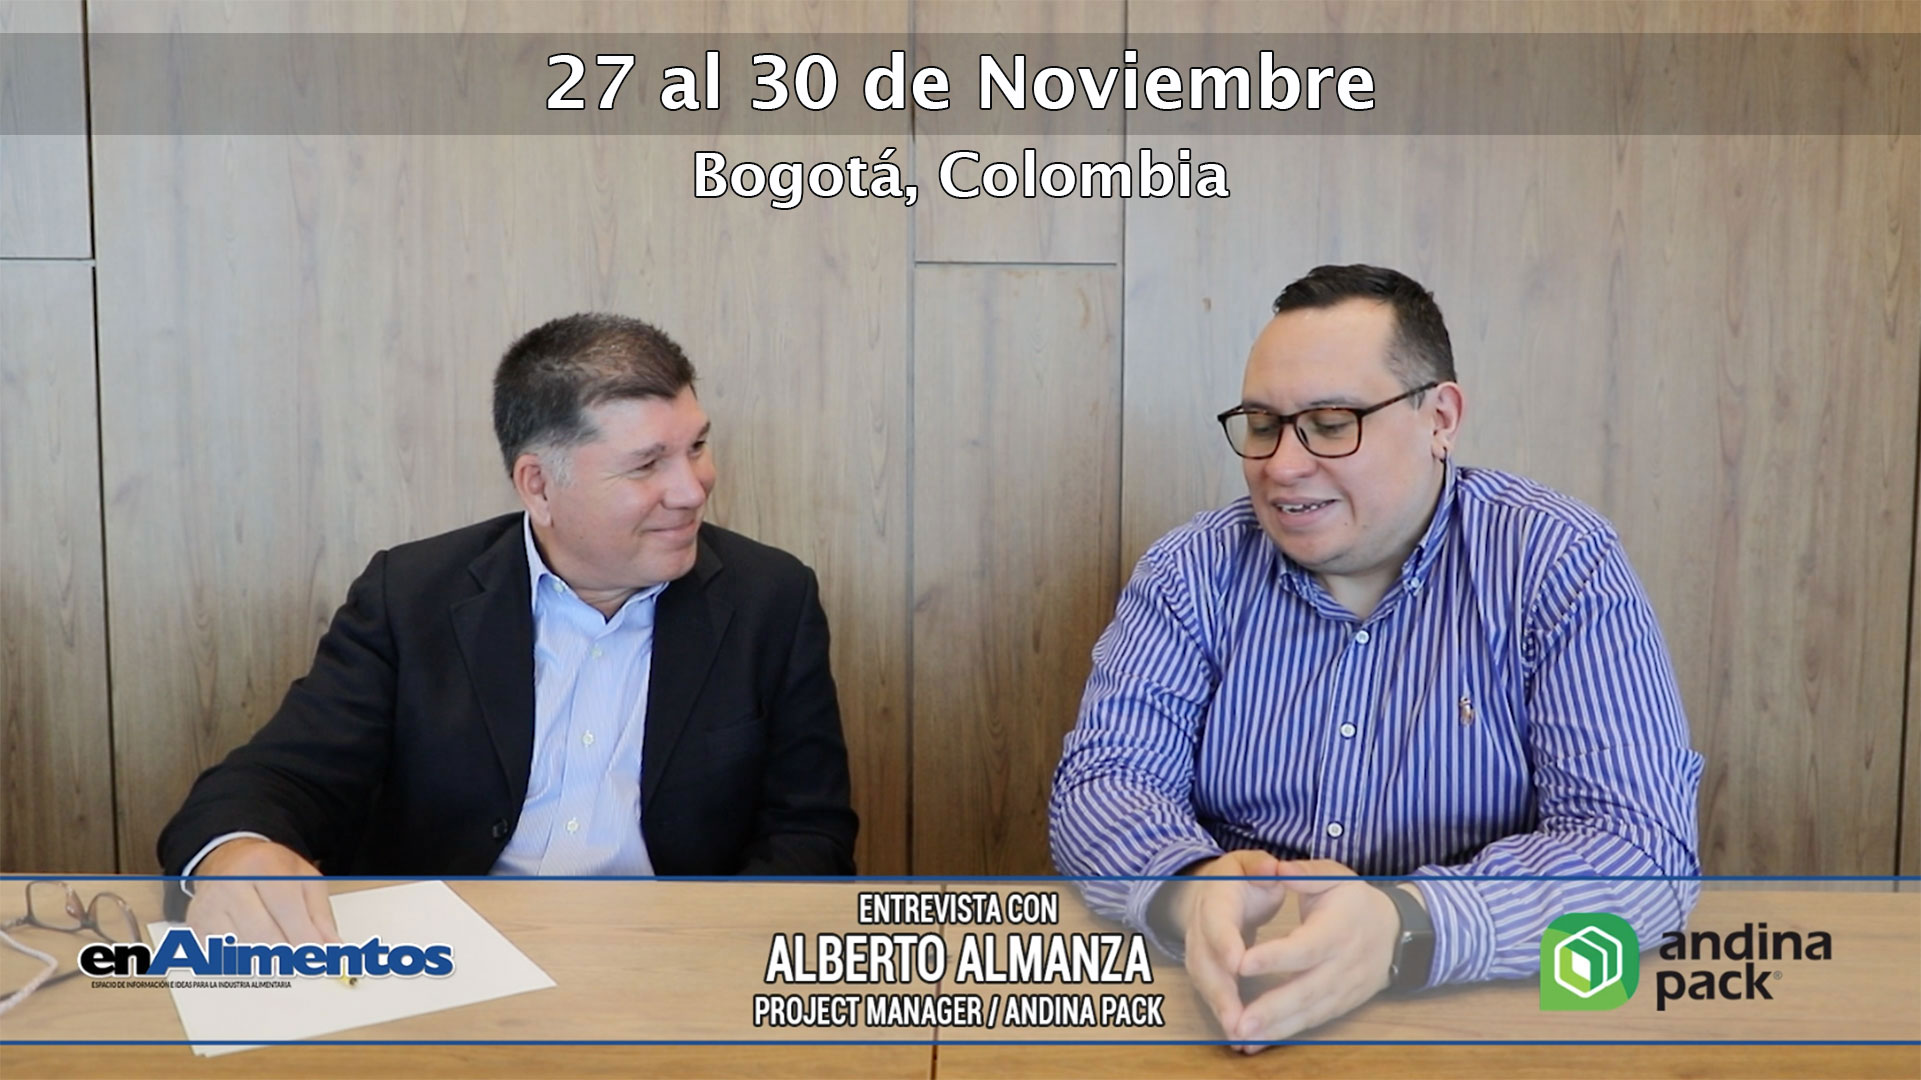 Andina Pack con lo mejor de procesamiento y empaque de alimentos y bebidas, conversamos con Alberto Almanza sobre este importante evento